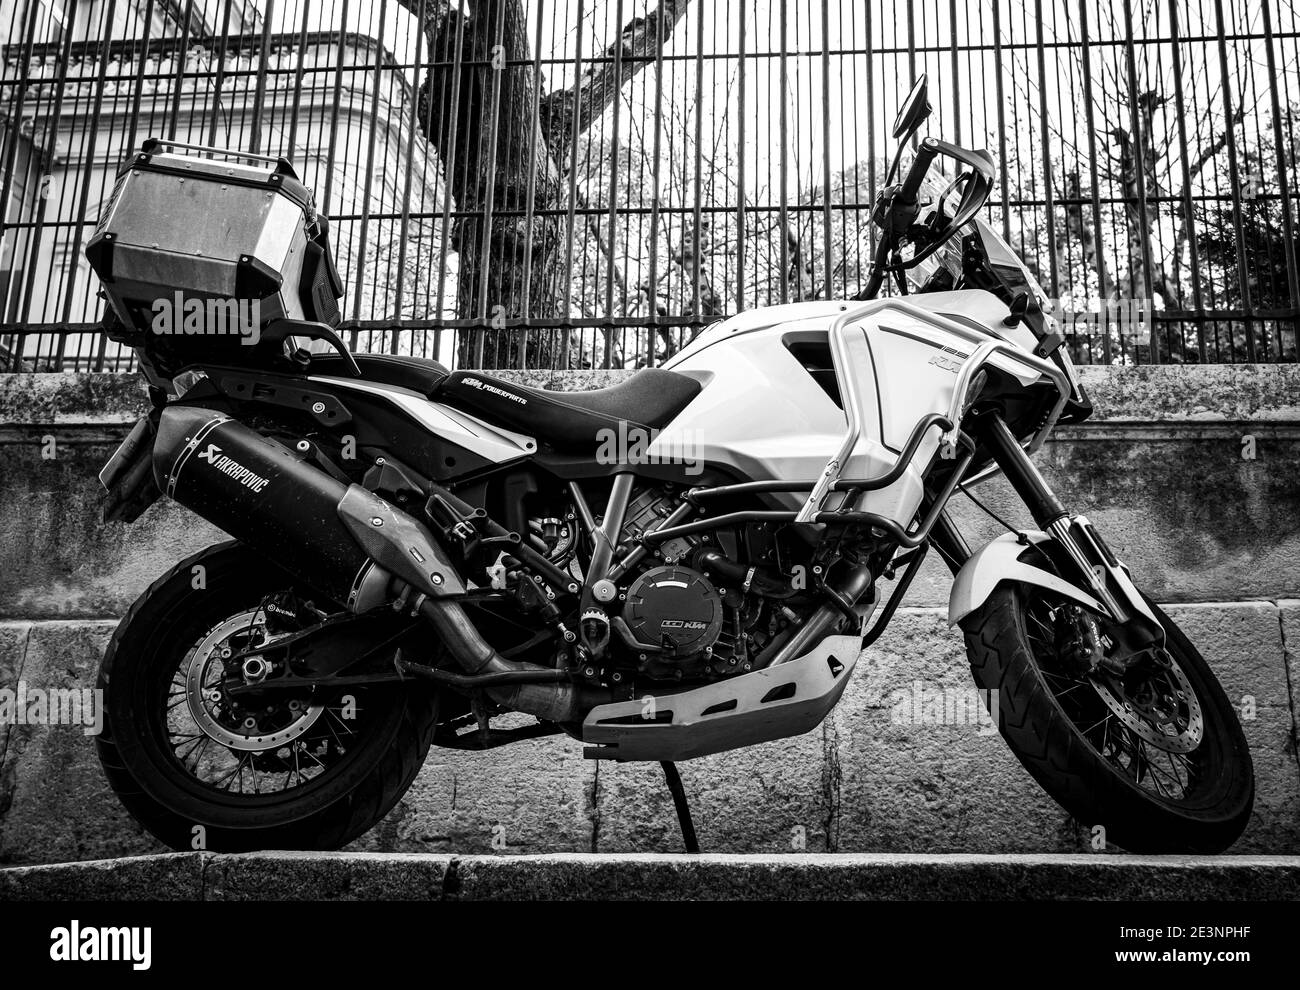 KTM Motorrad auf einer Straße in einer französischen Stadt - Schwarz und Weiß Stockfoto